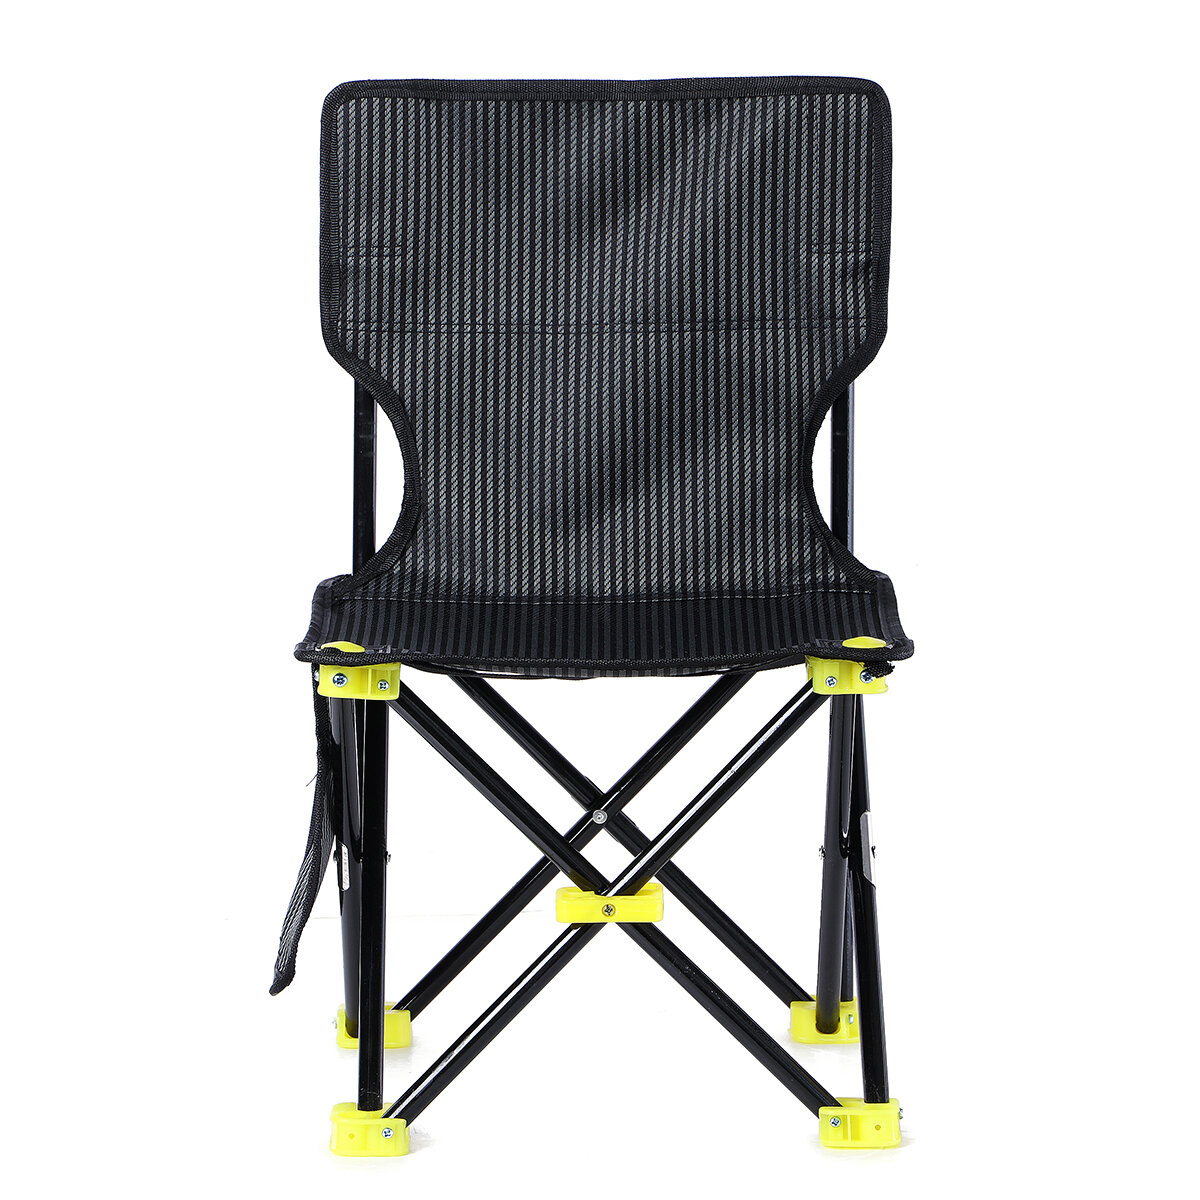 Cadeira dobrável ao ar livre Portátil Camping Picnic BBQ Seat Stool Max Load 200kg 